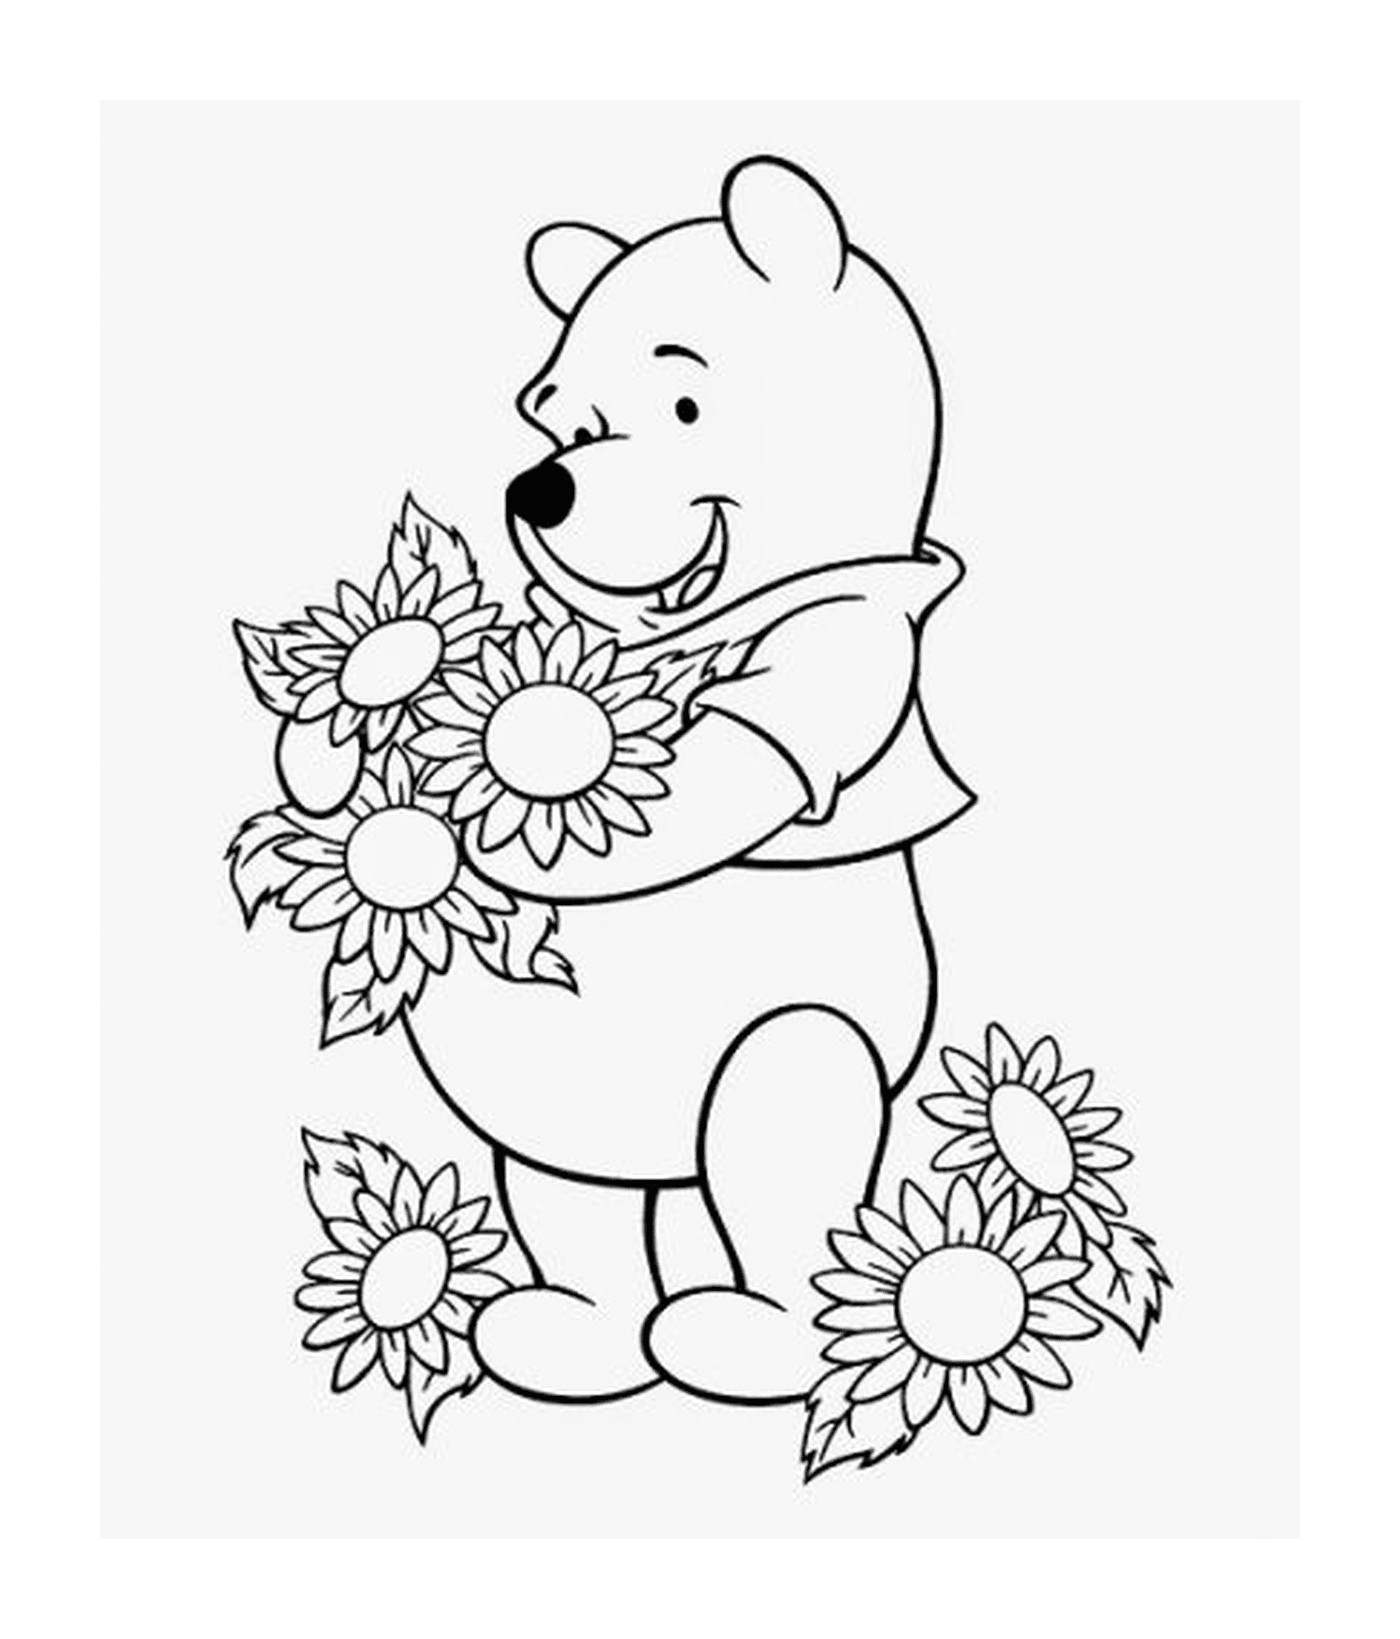  O urso ama flores 